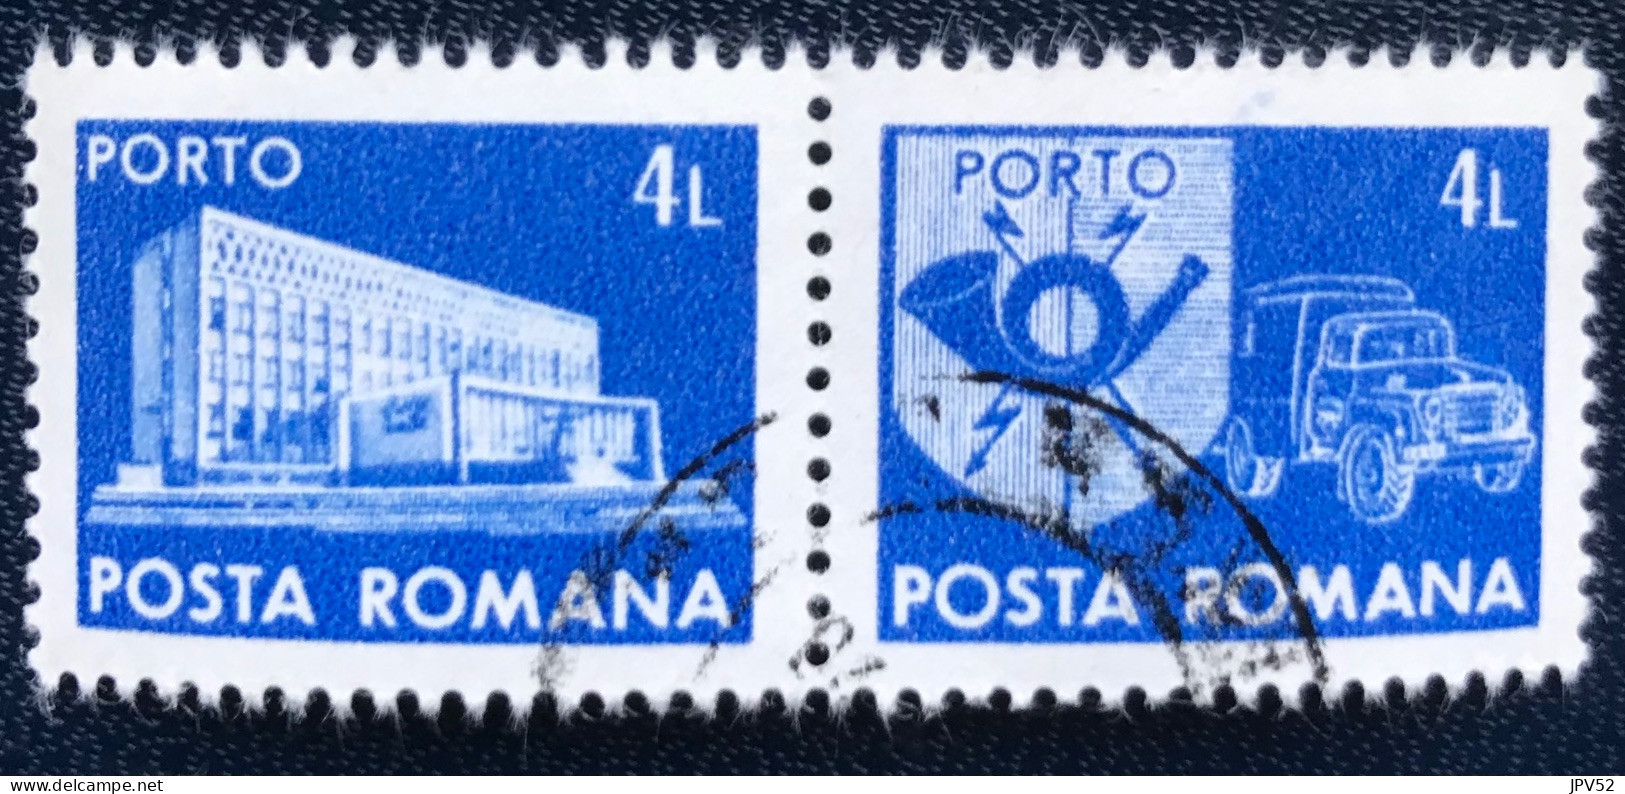 Romana - Roemenië - C14/55 - 1982 - (°)used - Michel 130 - Postkantoor & Postembleem & Postvoertuig - Portomarken